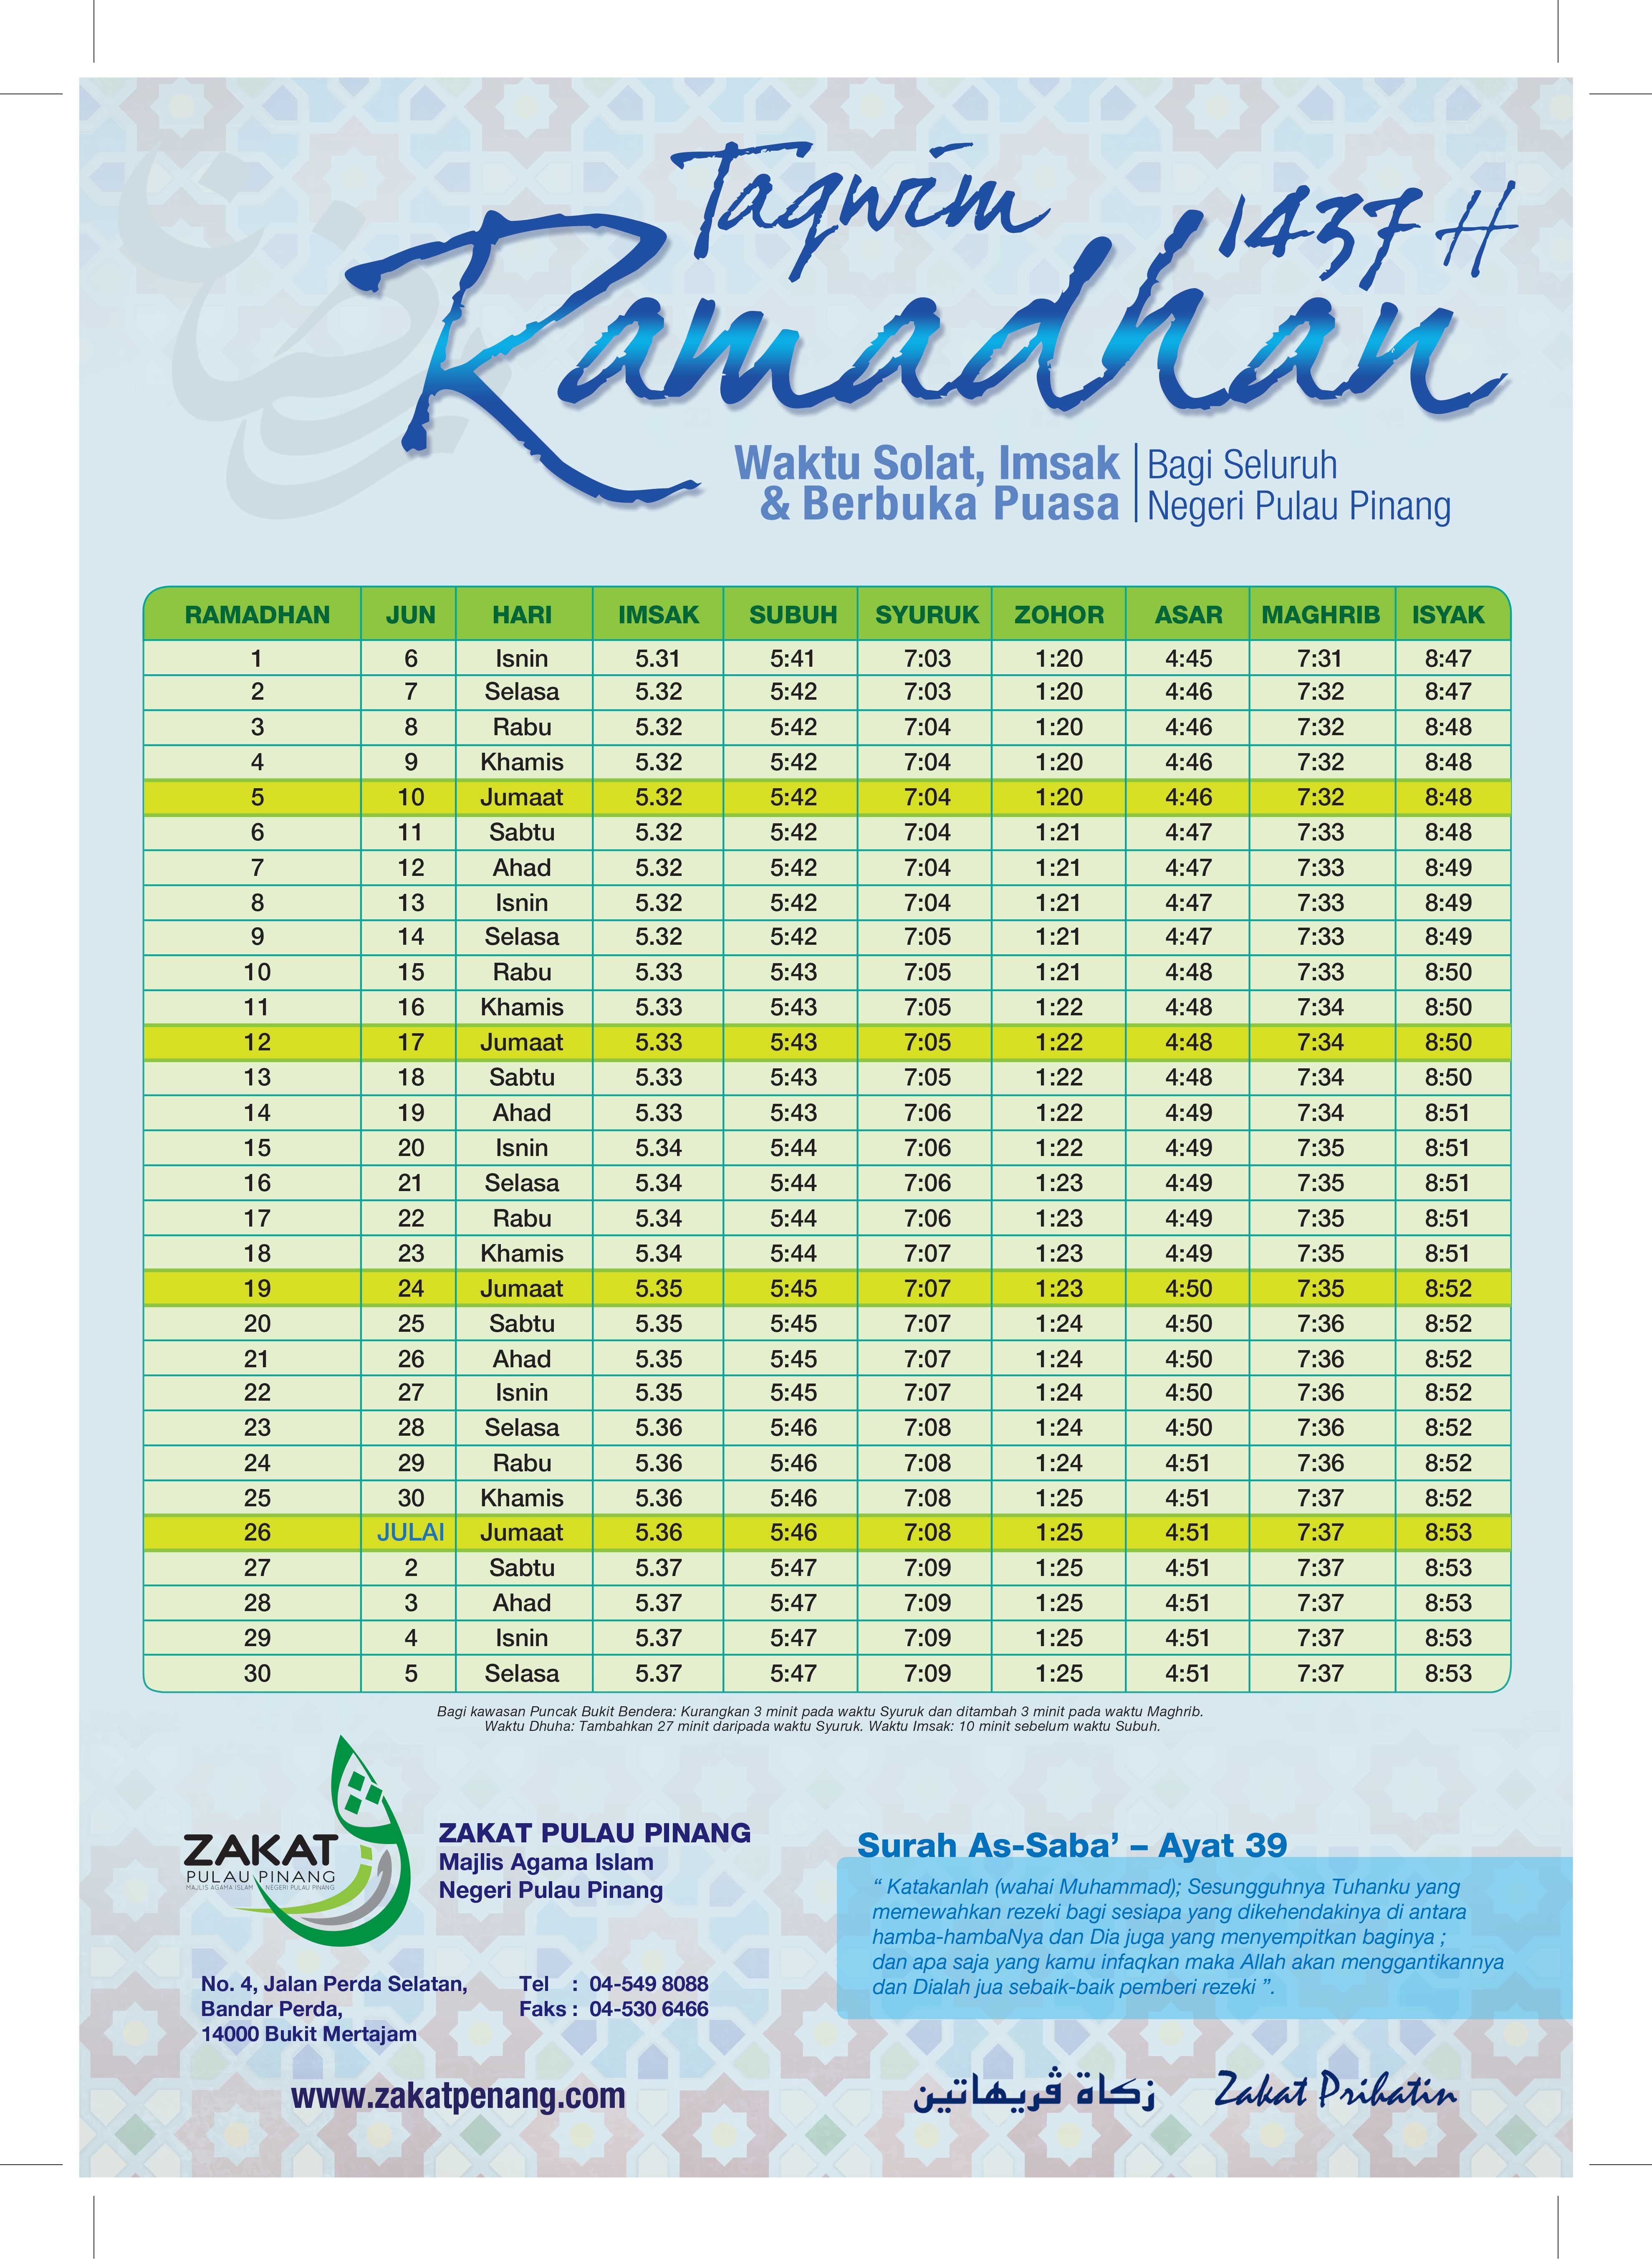 Takwim ramadhan 2022